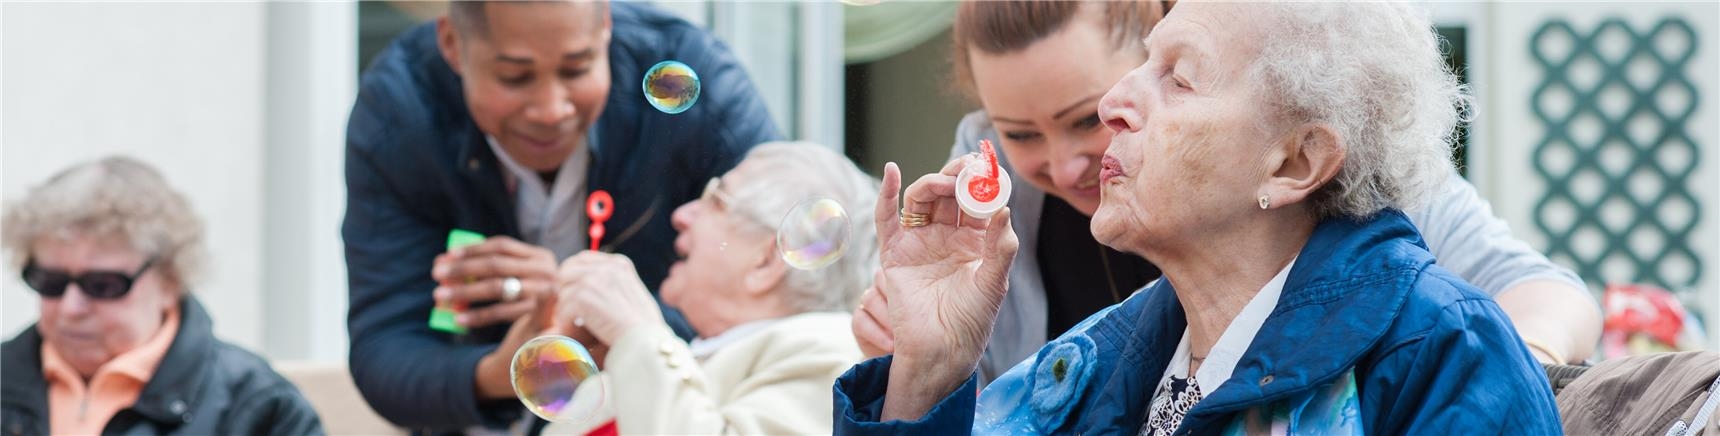 Gäste der Tagspflege und Altenpfleger produzieren Seifenblasen als Atemübung